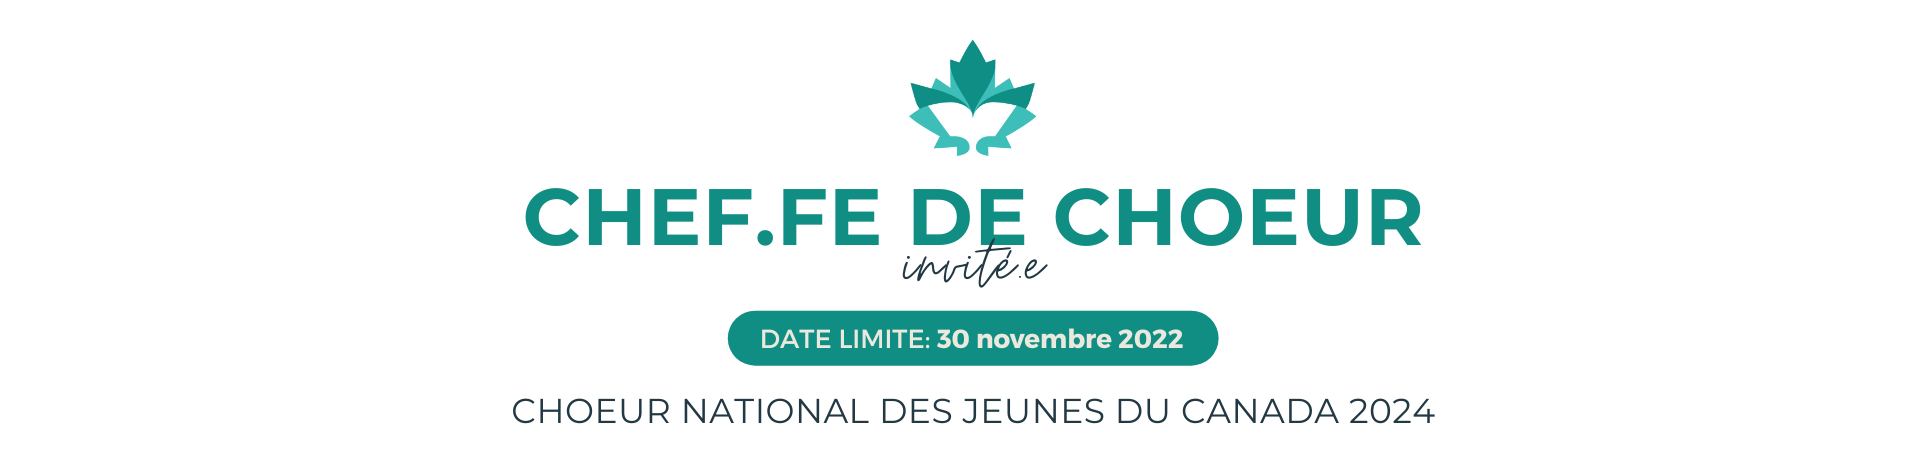 Image du feuille du marque CNJC, text qui suit: Chef.fe de chœue invité.e - date limite: 30 novembre 2022, Chœur national des jeunes du Canada 2024